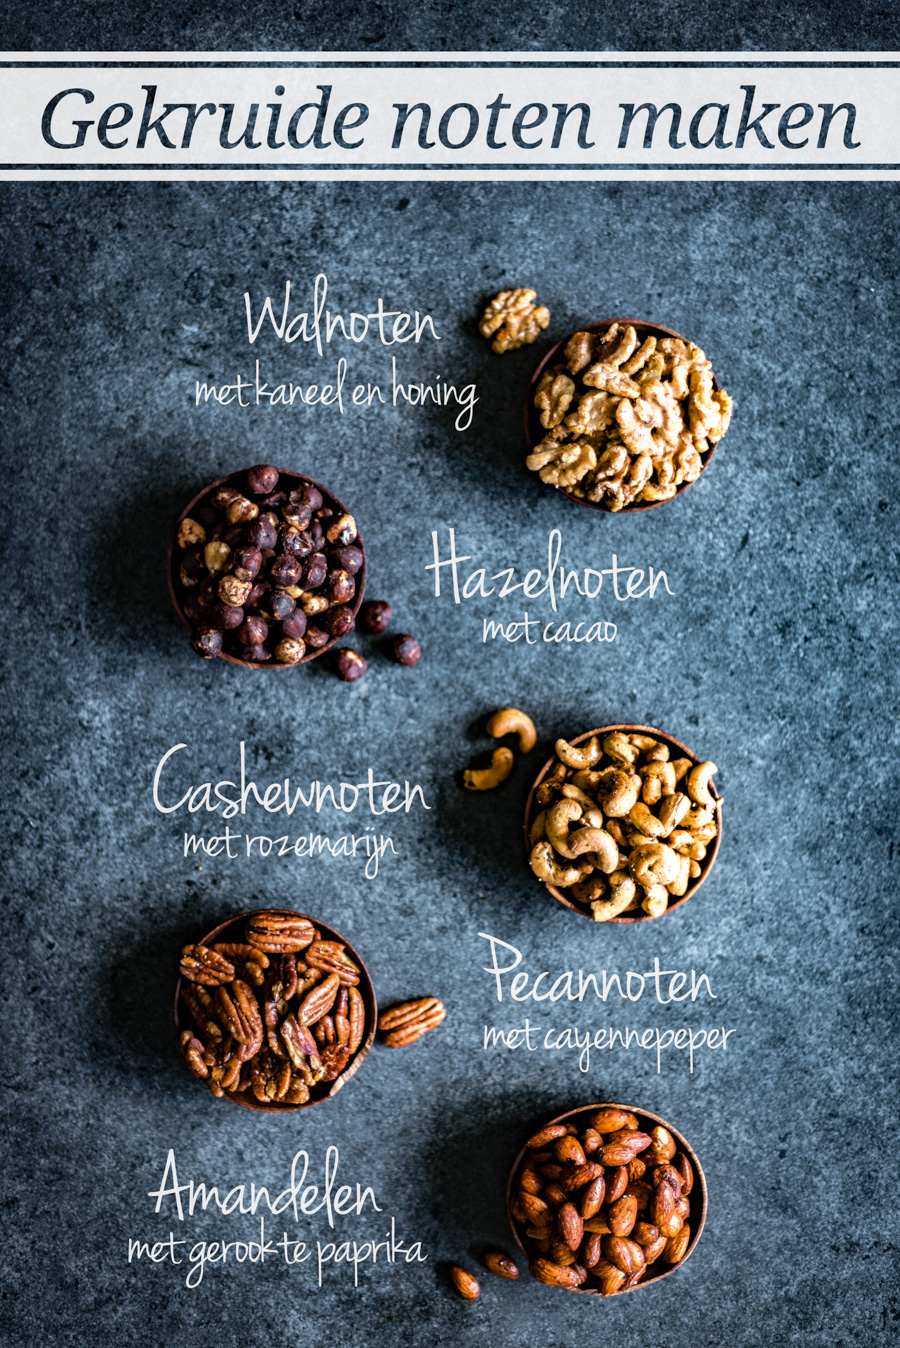 maak je eigen gekruide noten met onze 5 recepten